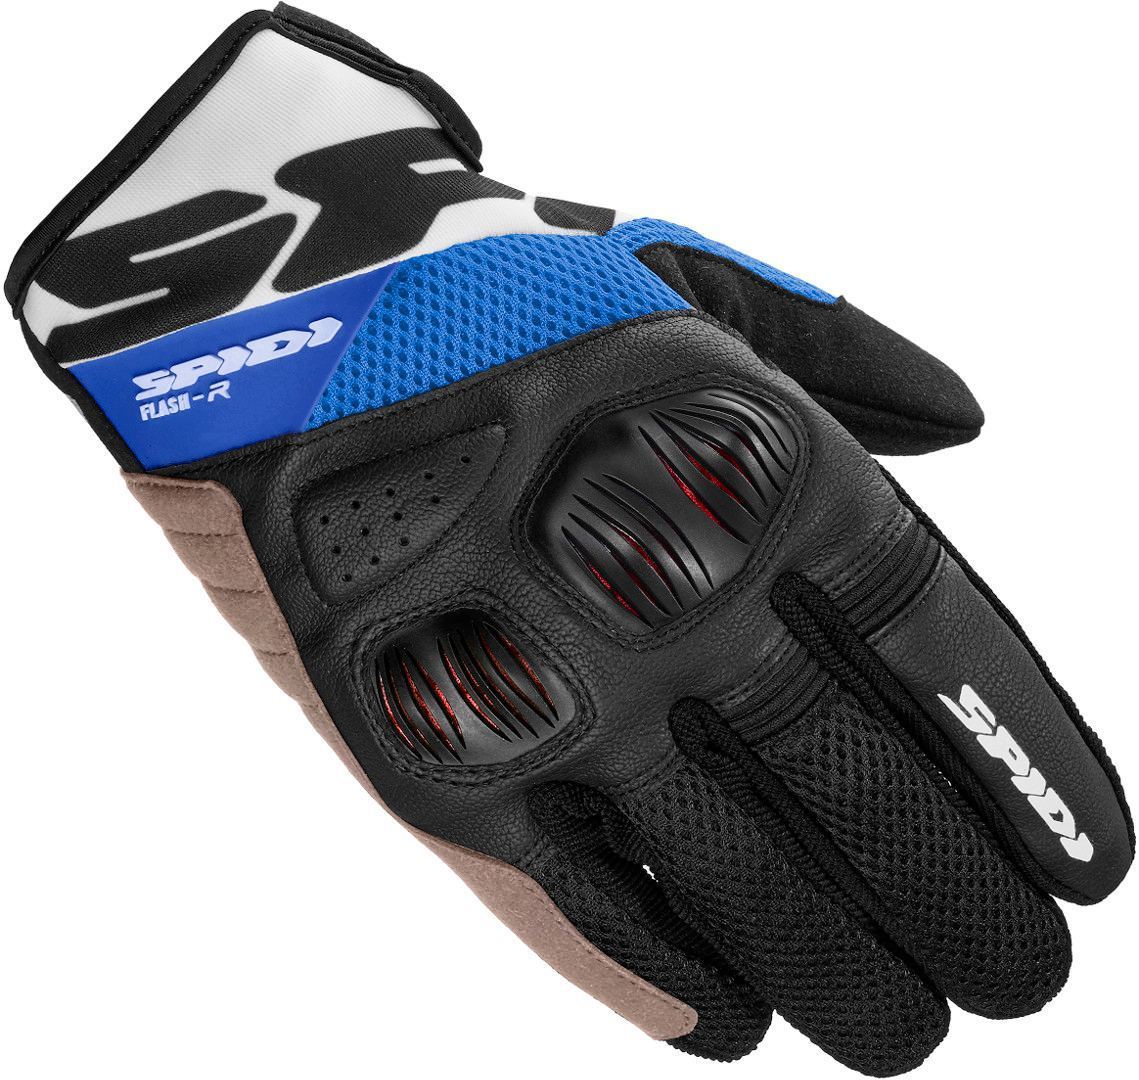 Spidi Flash-R Evo Gloves, black-white-blue, Size XL, black-white-blue, Size XL